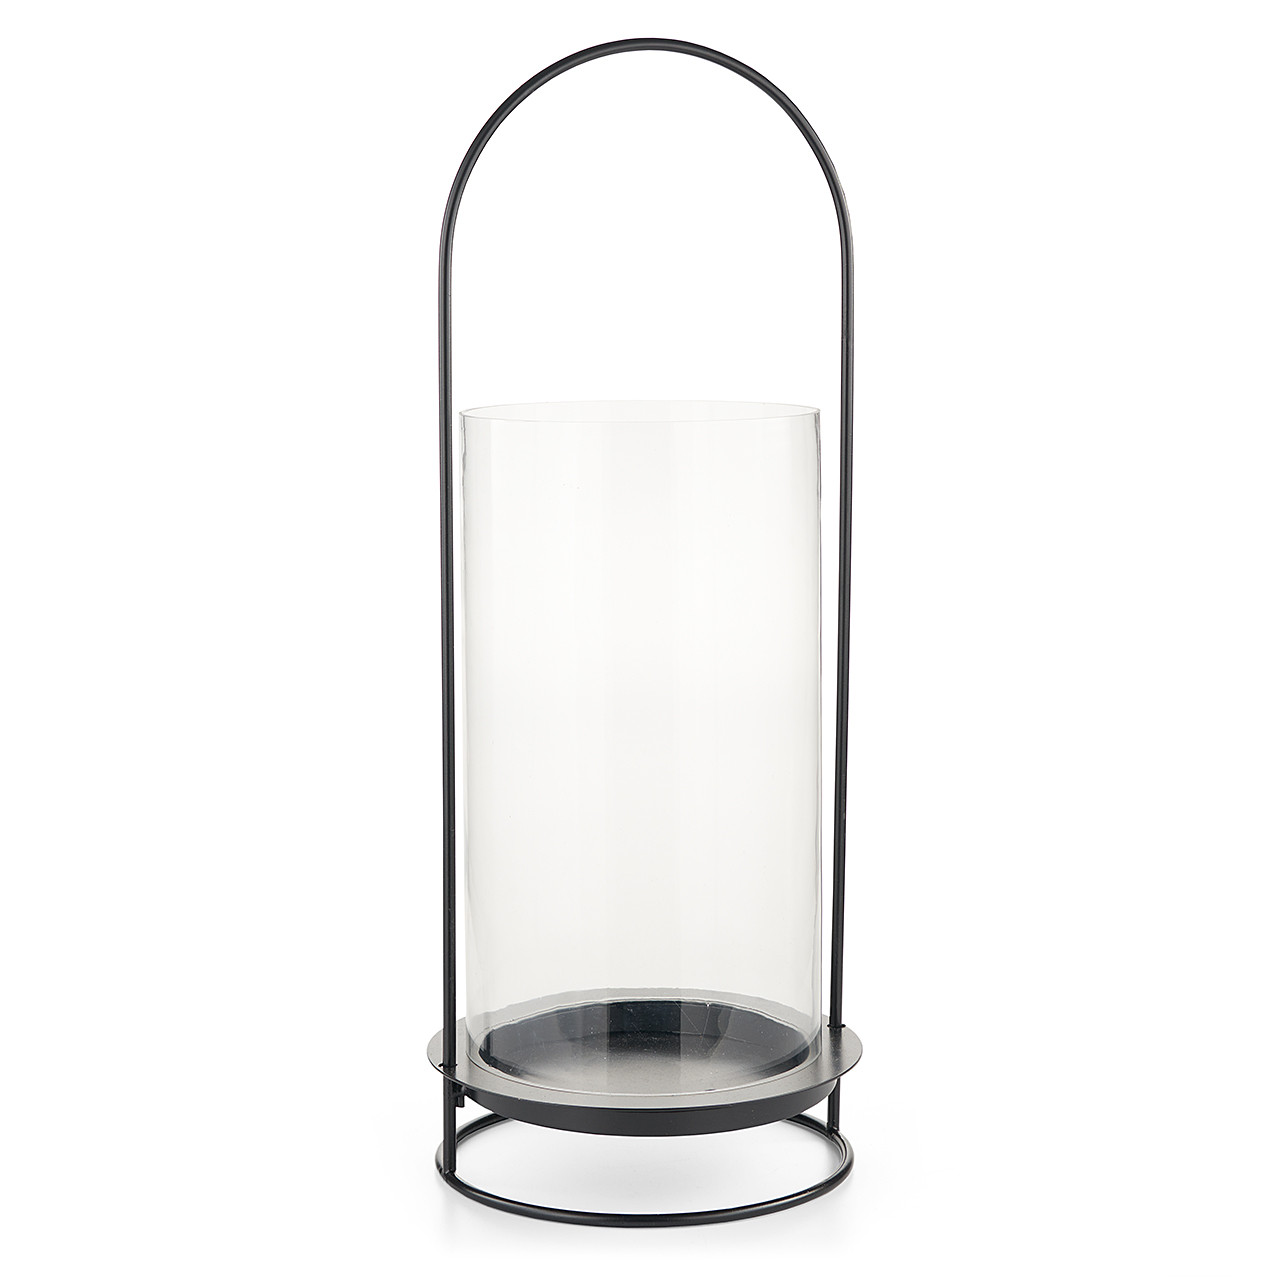 Black Round Piller Lantern with Glass